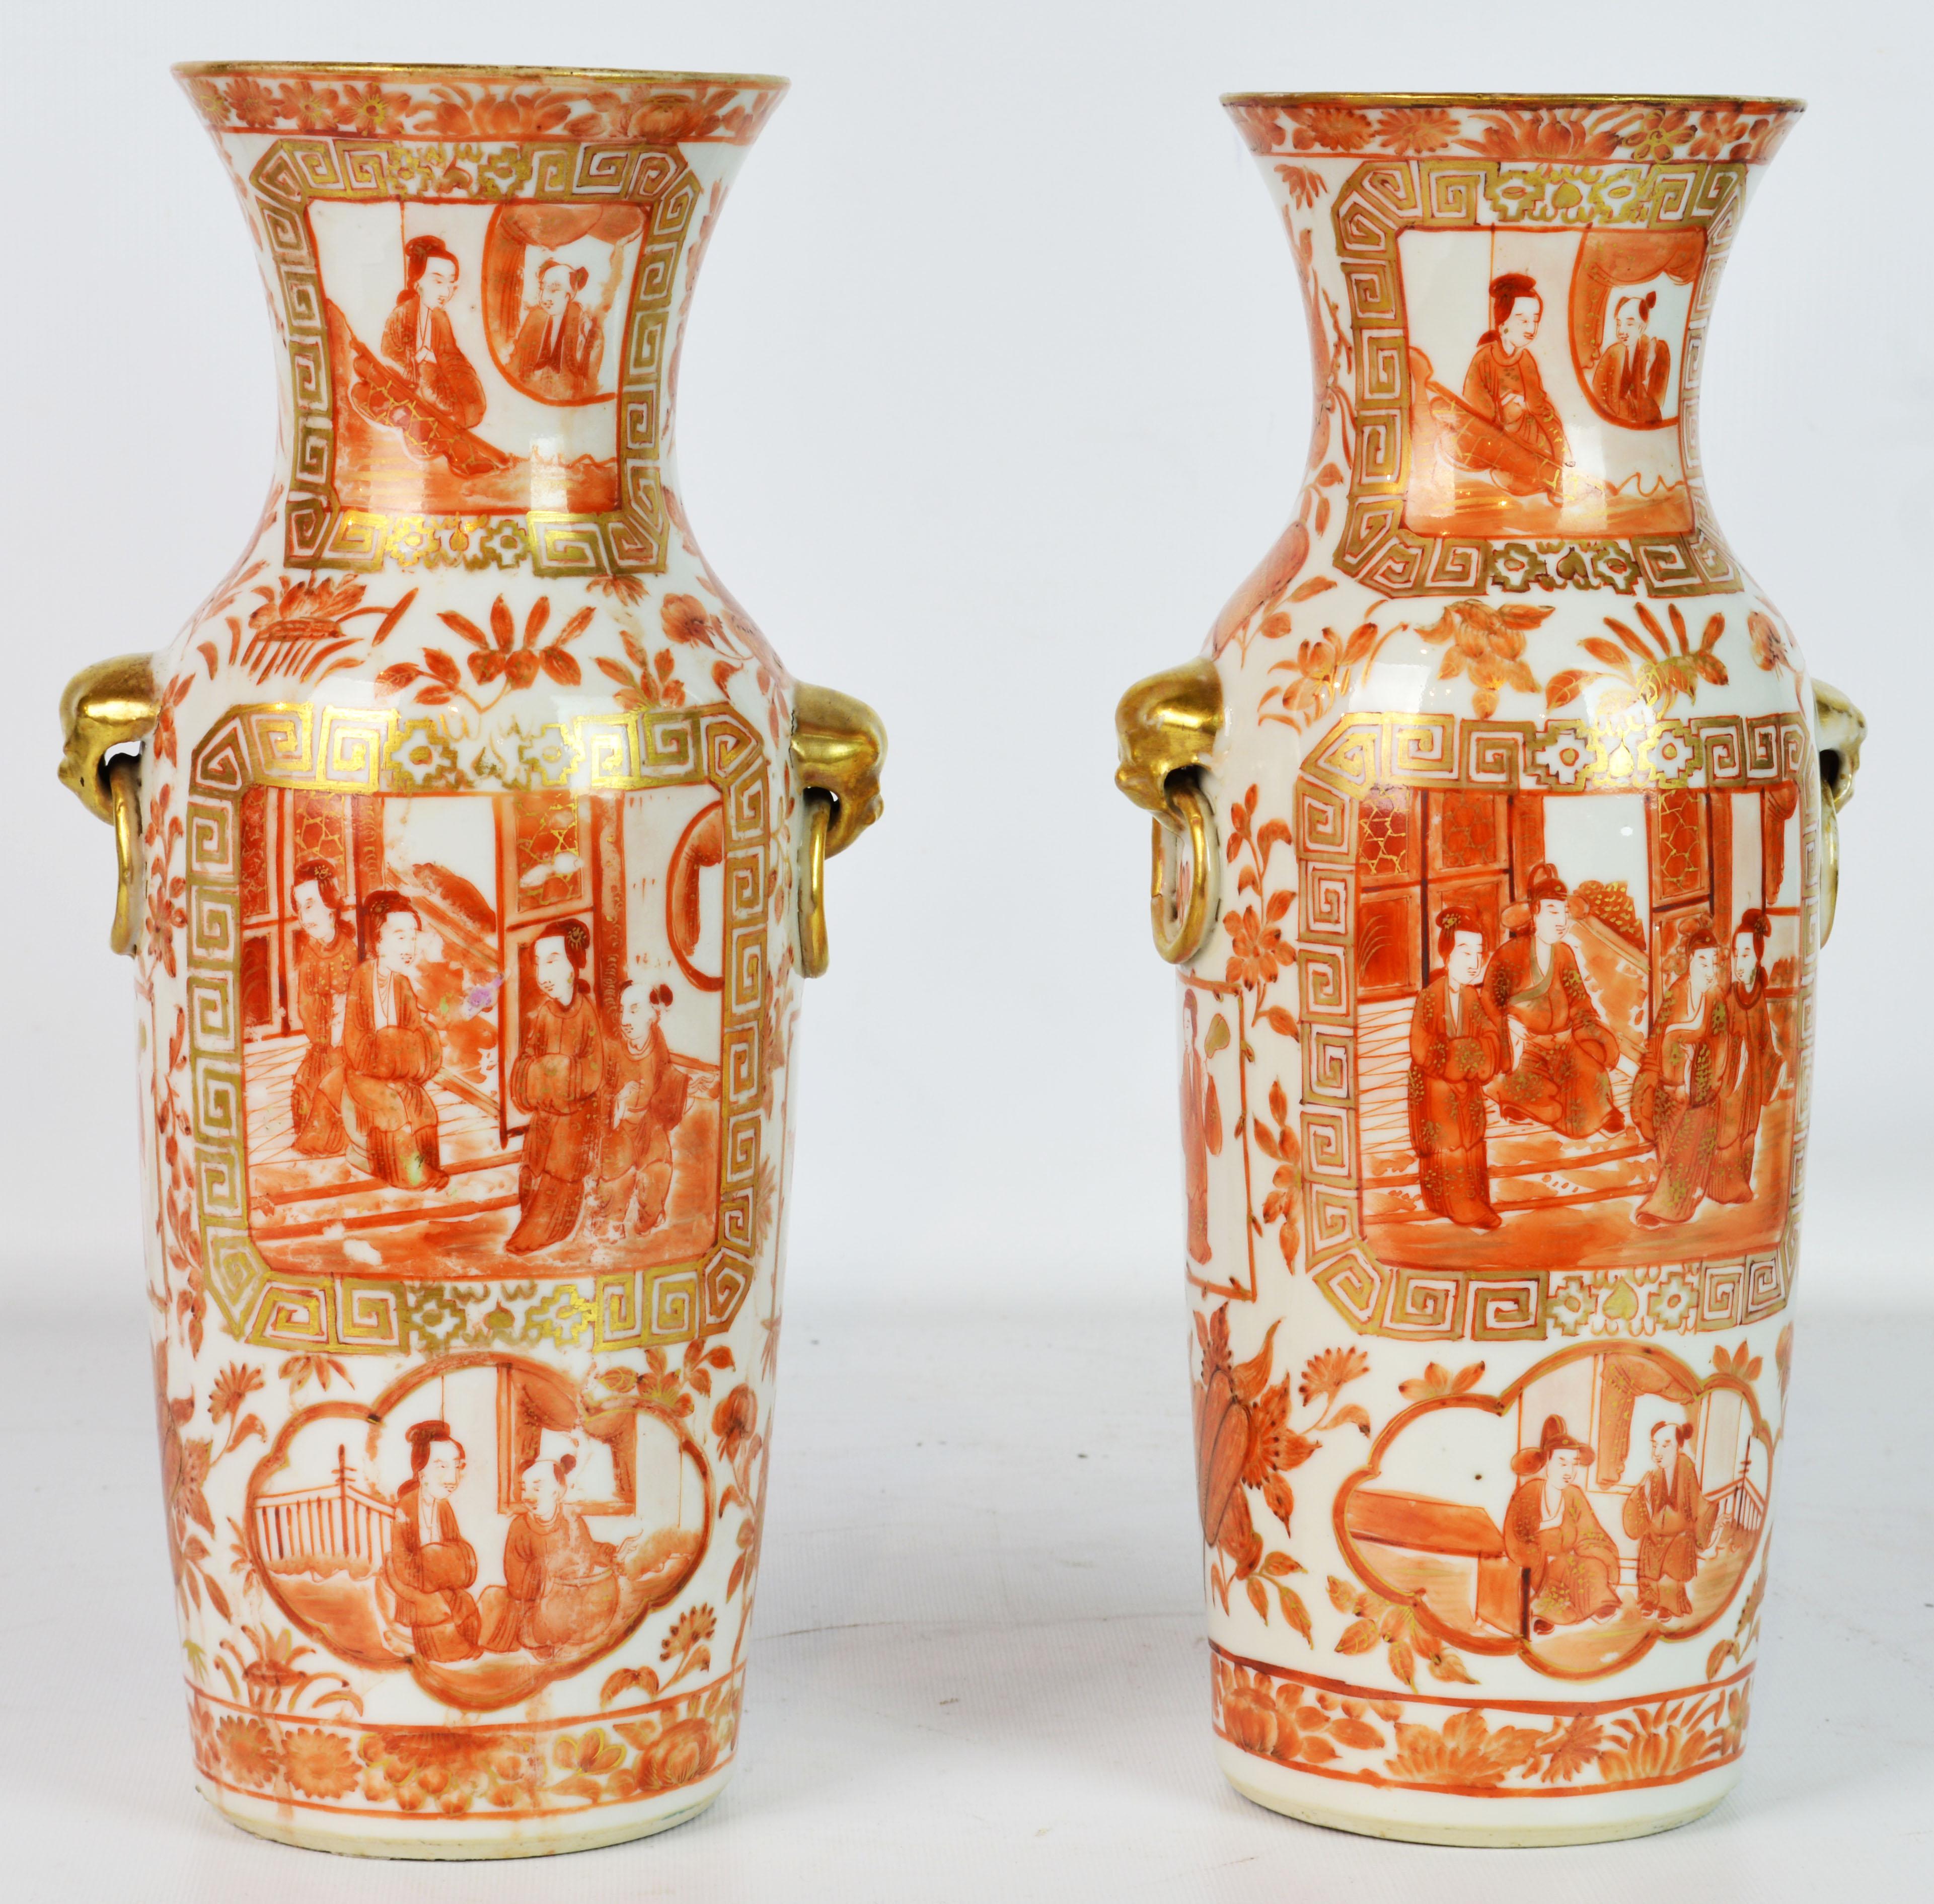 Seltene orangefarbene und vergoldete chinesische Export-Daoguang-Vasen des 19. Jahrhunderts, Paar (Chinesischer Export)